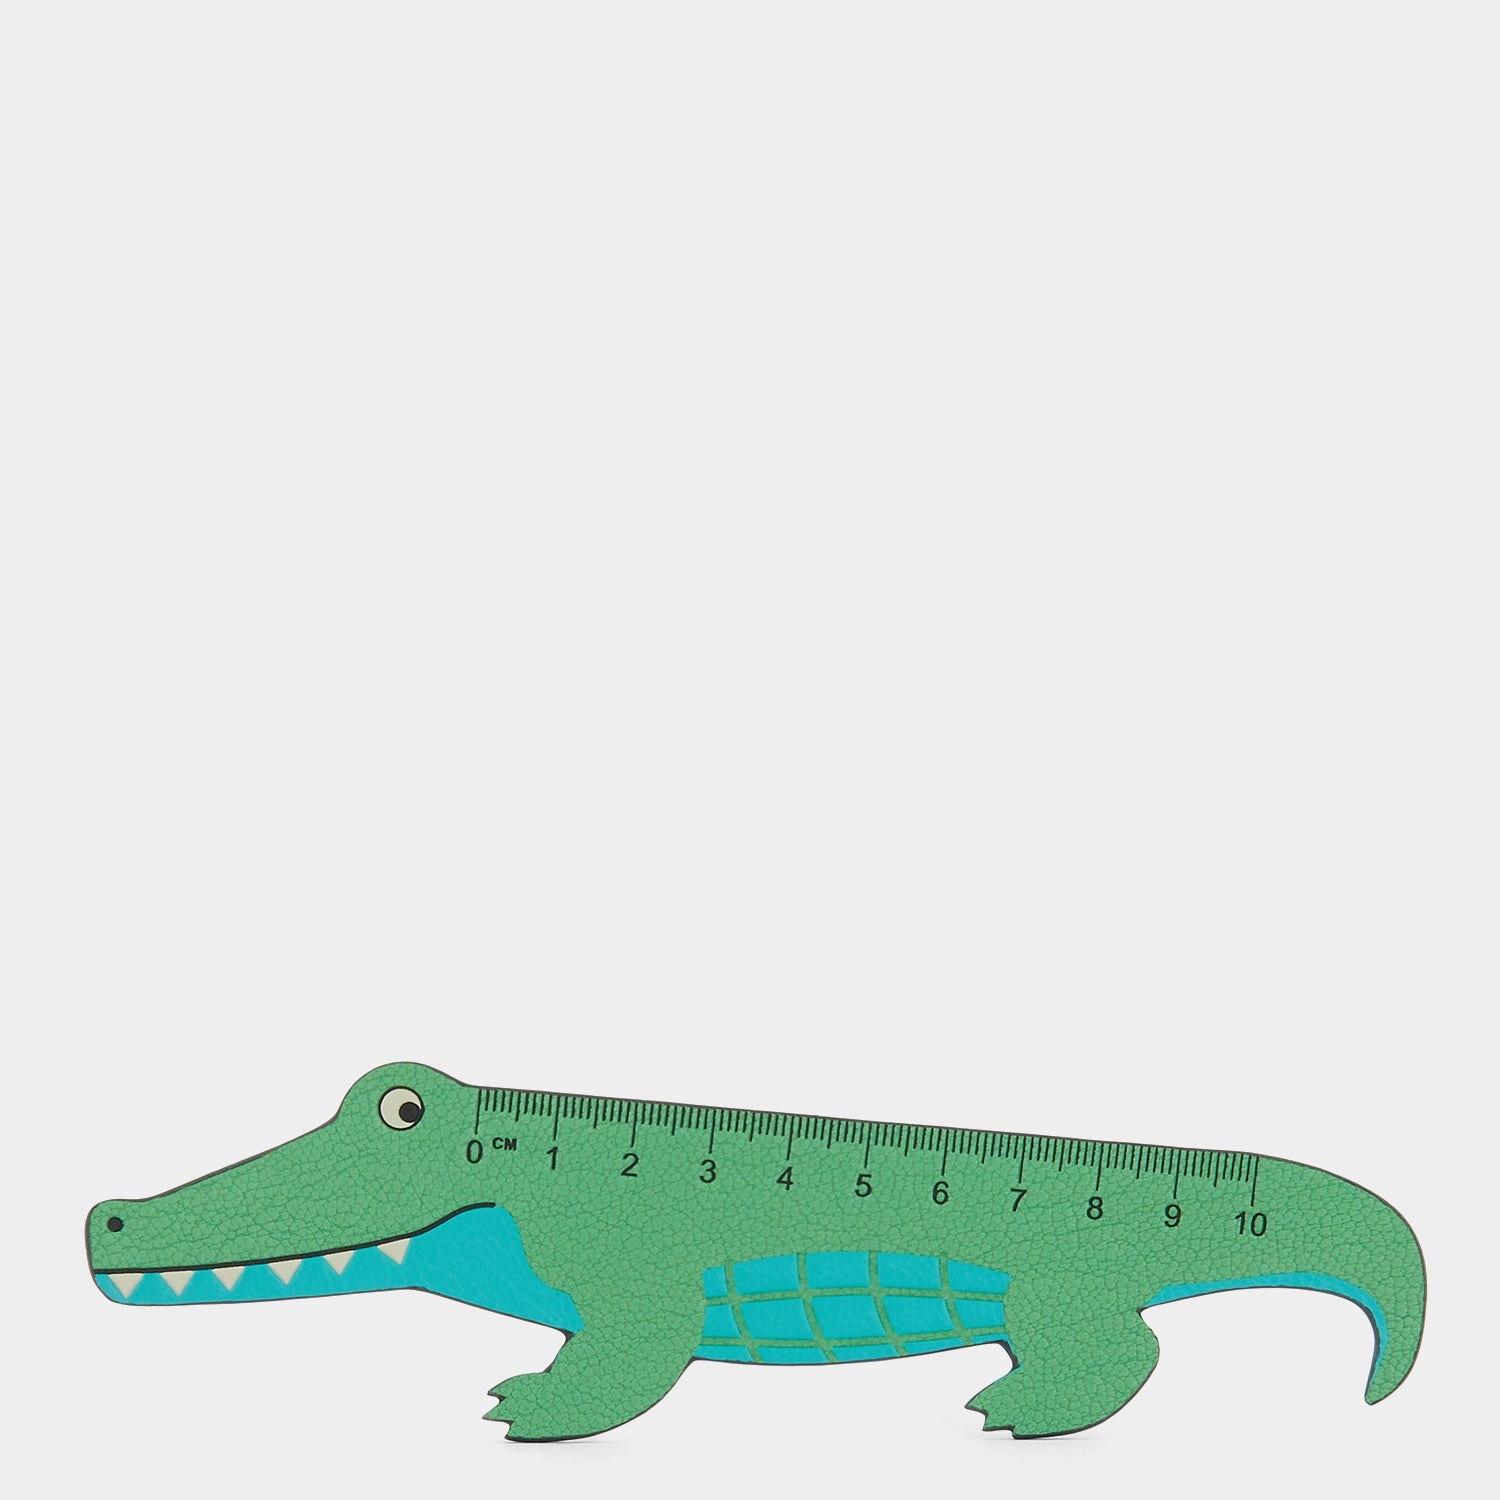 Crocodile Ruler -

                  
                    Shiny Capra in Green -
                  

                  Anya Hindmarch EU
